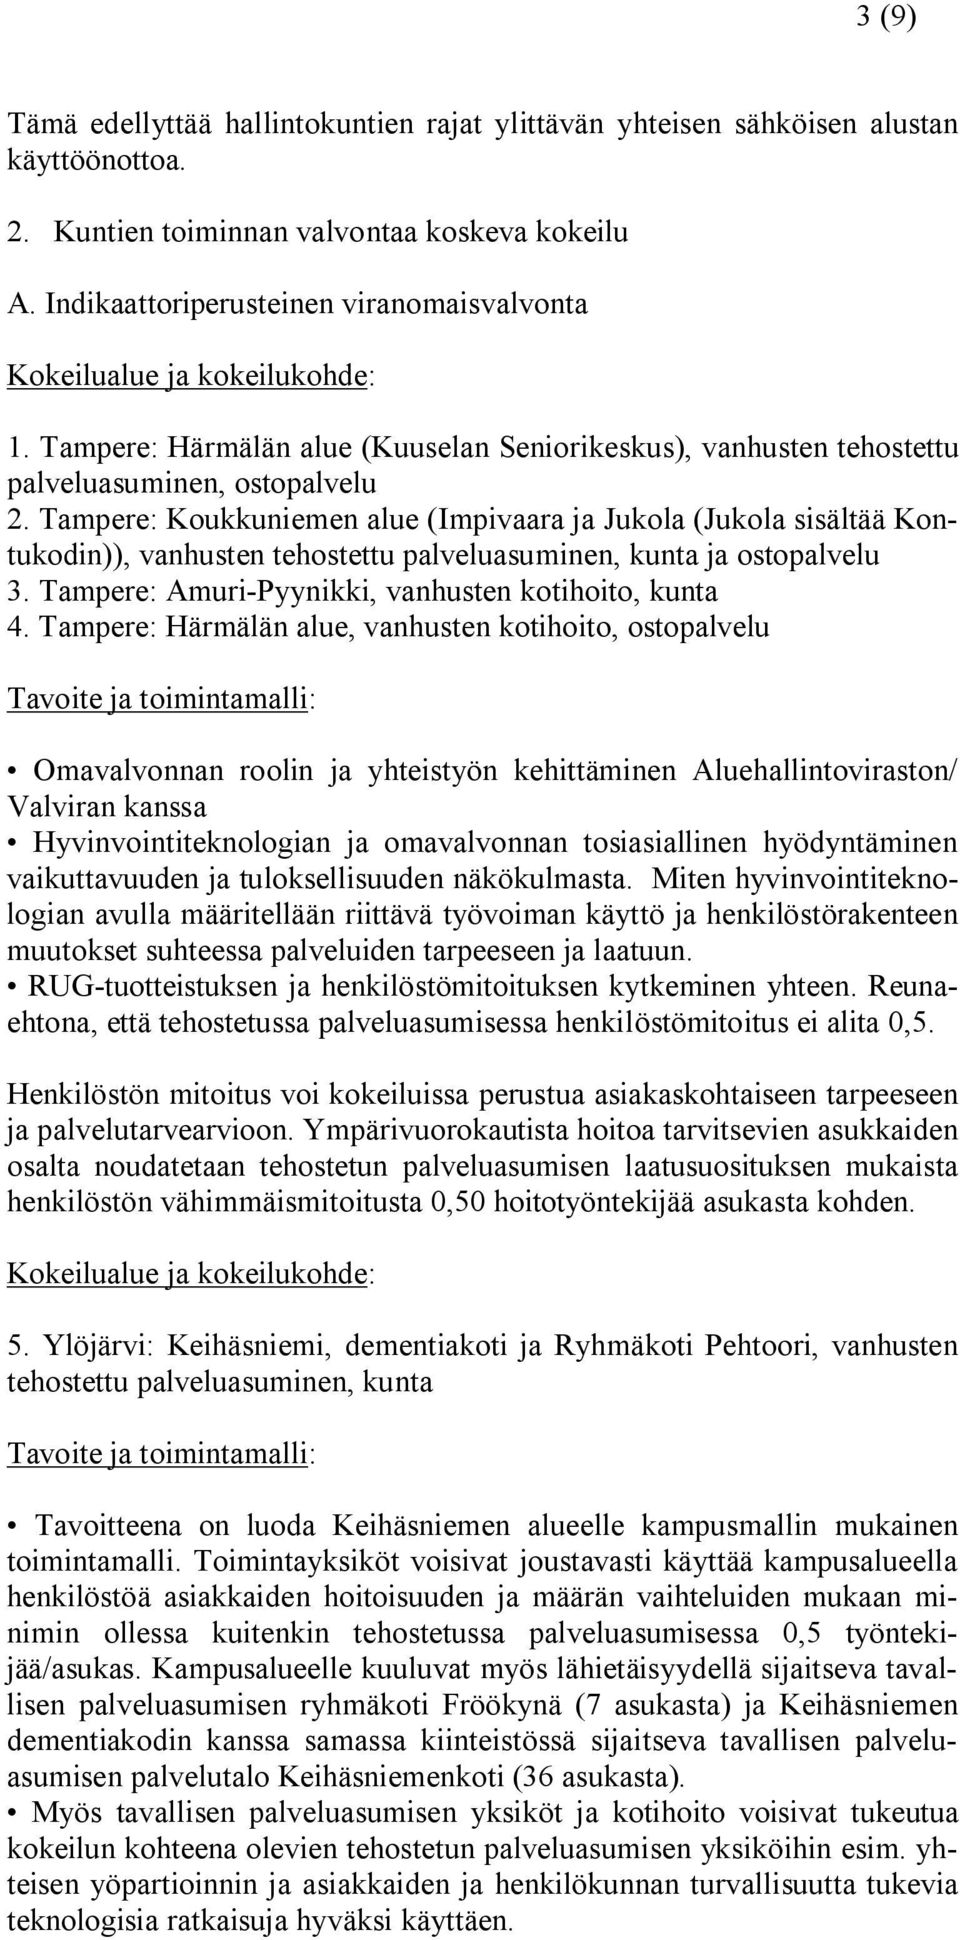 Tampere: Koukkuniemen alue (Impivaara ja Jukola (Jukola sisältää Kontukodin)), vanhusten tehostettu palveluasuminen, kunta ja ostopalvelu 3. Tampere: Amuri-Pyynikki, vanhusten kotihoito, kunta 4.